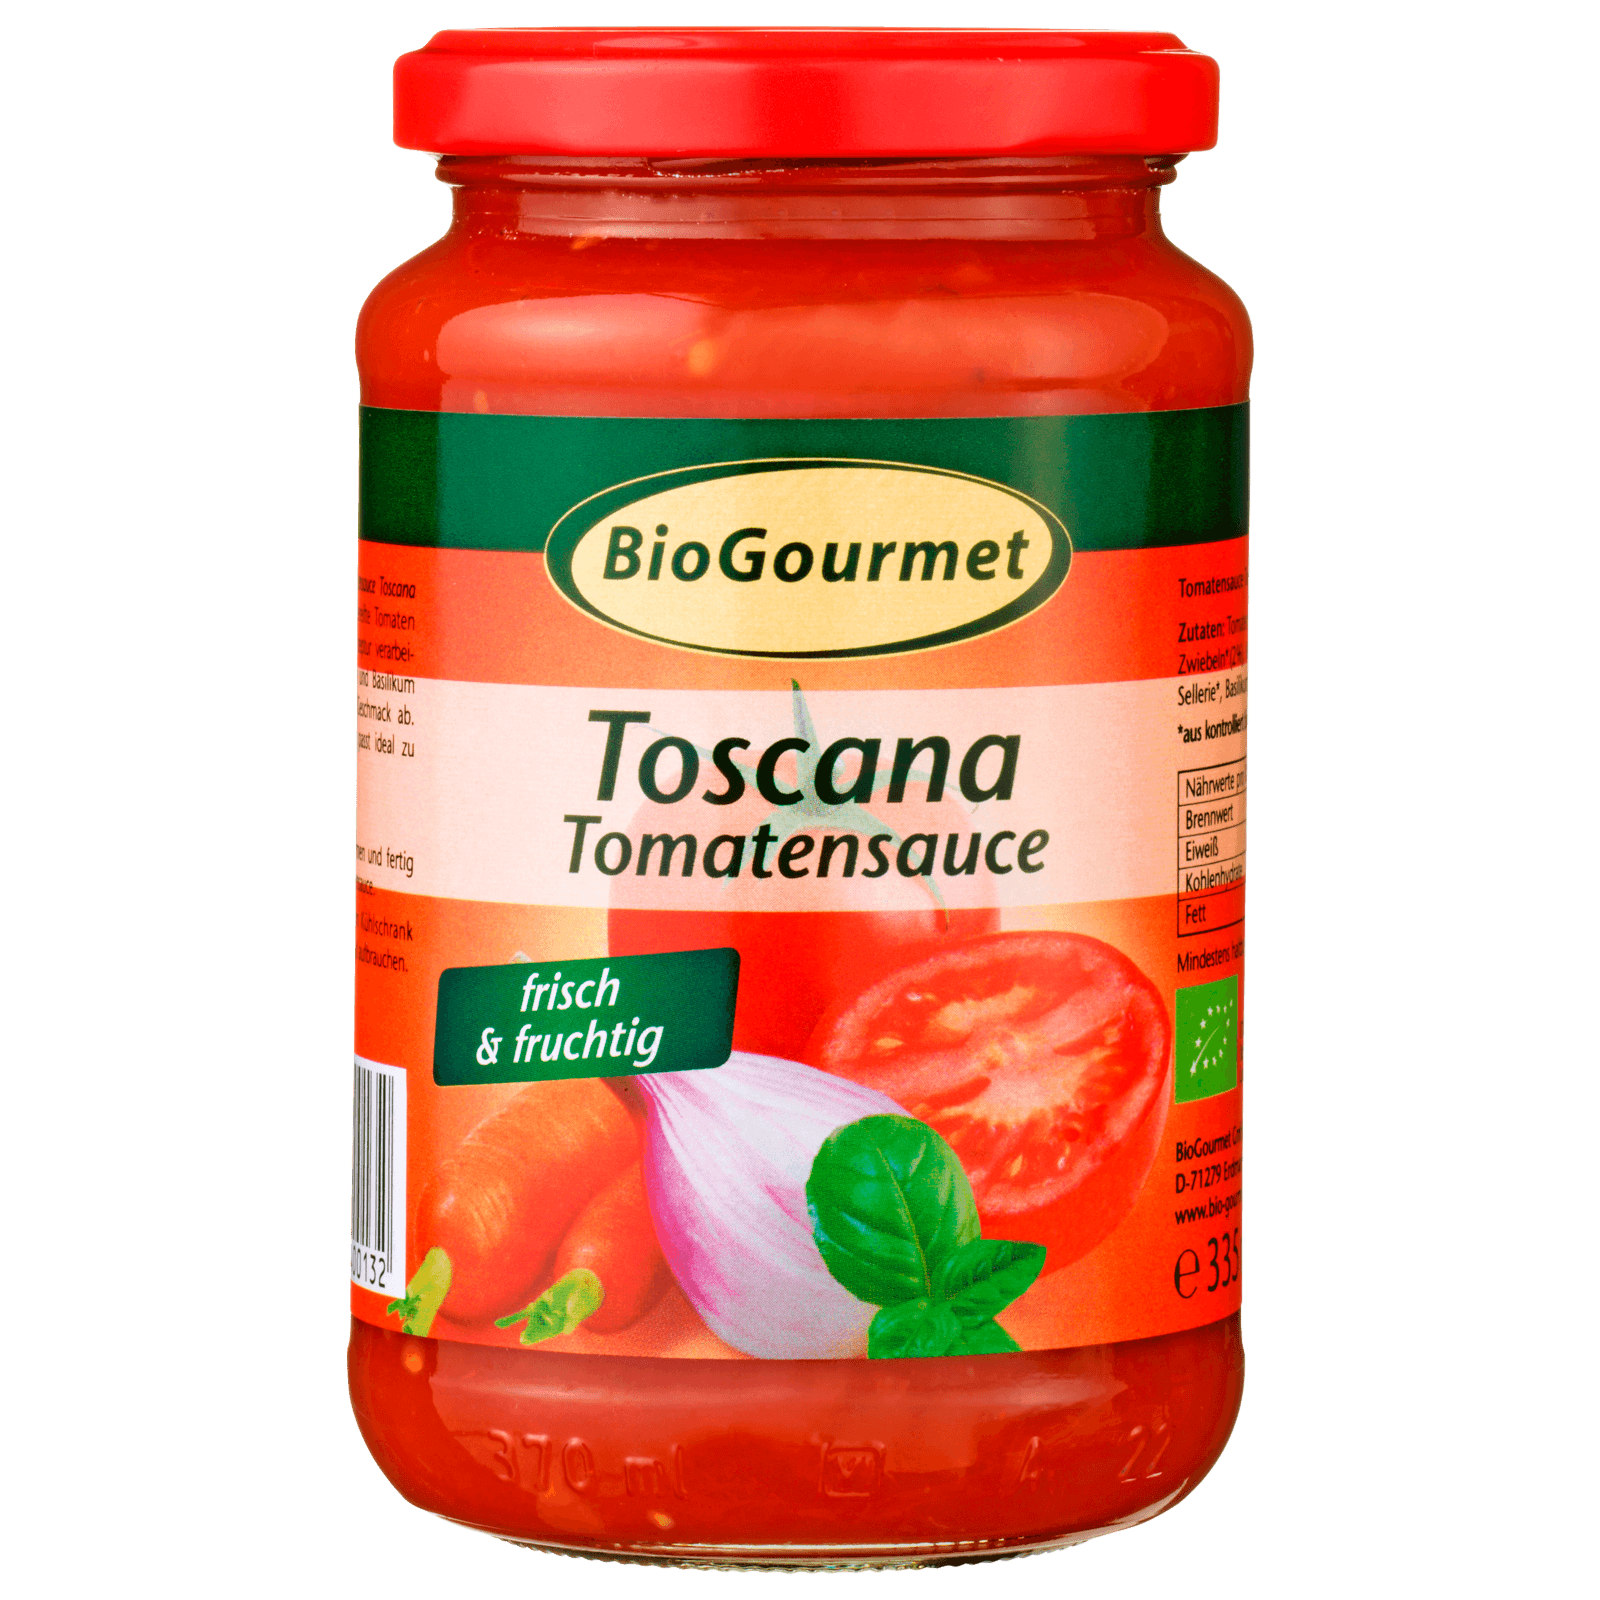 BioGourmet Bio Tomatensauce Toscana 340g  für 3.09 EUR